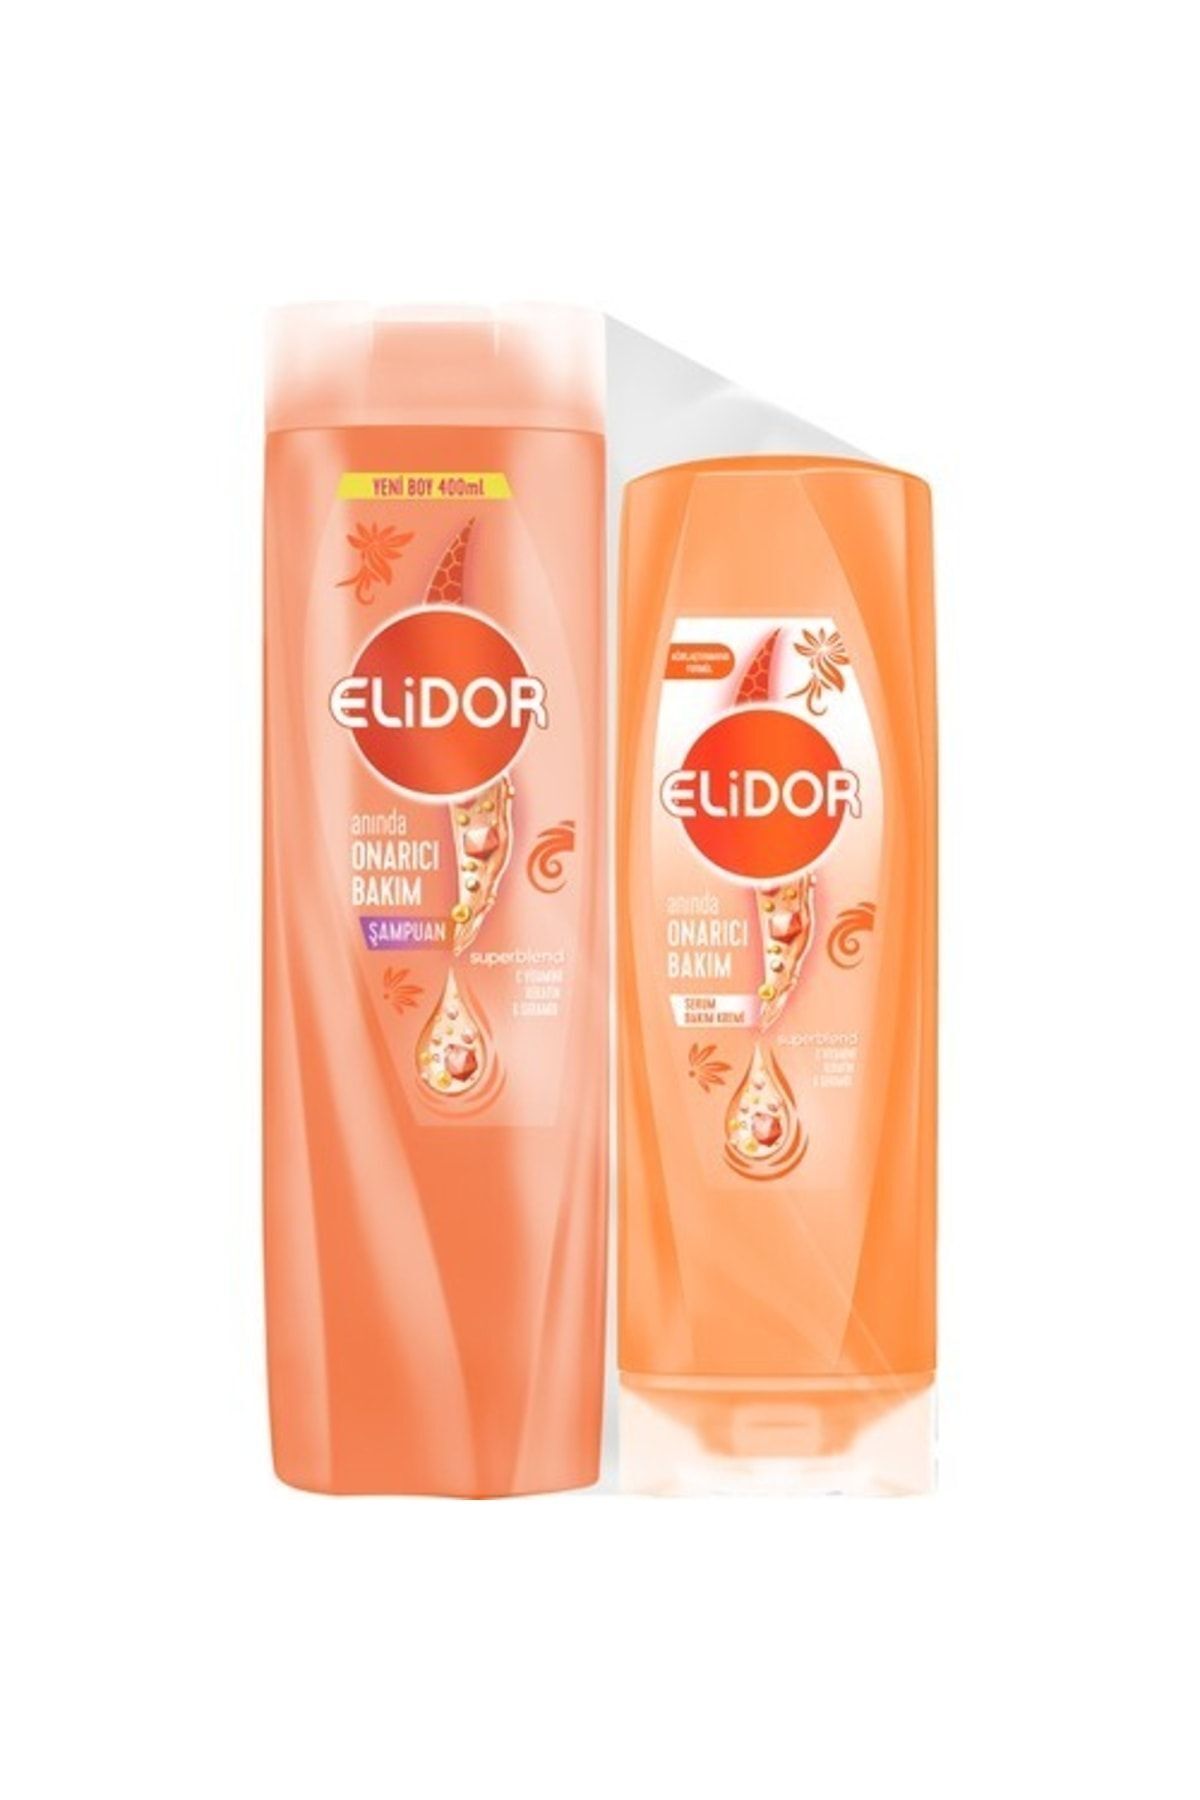 Elidor Superblend Saç Bakım Şampuanı Anında Onarıcı Bakım 400 Ml + Serum Bakım Kremi 200 Ml